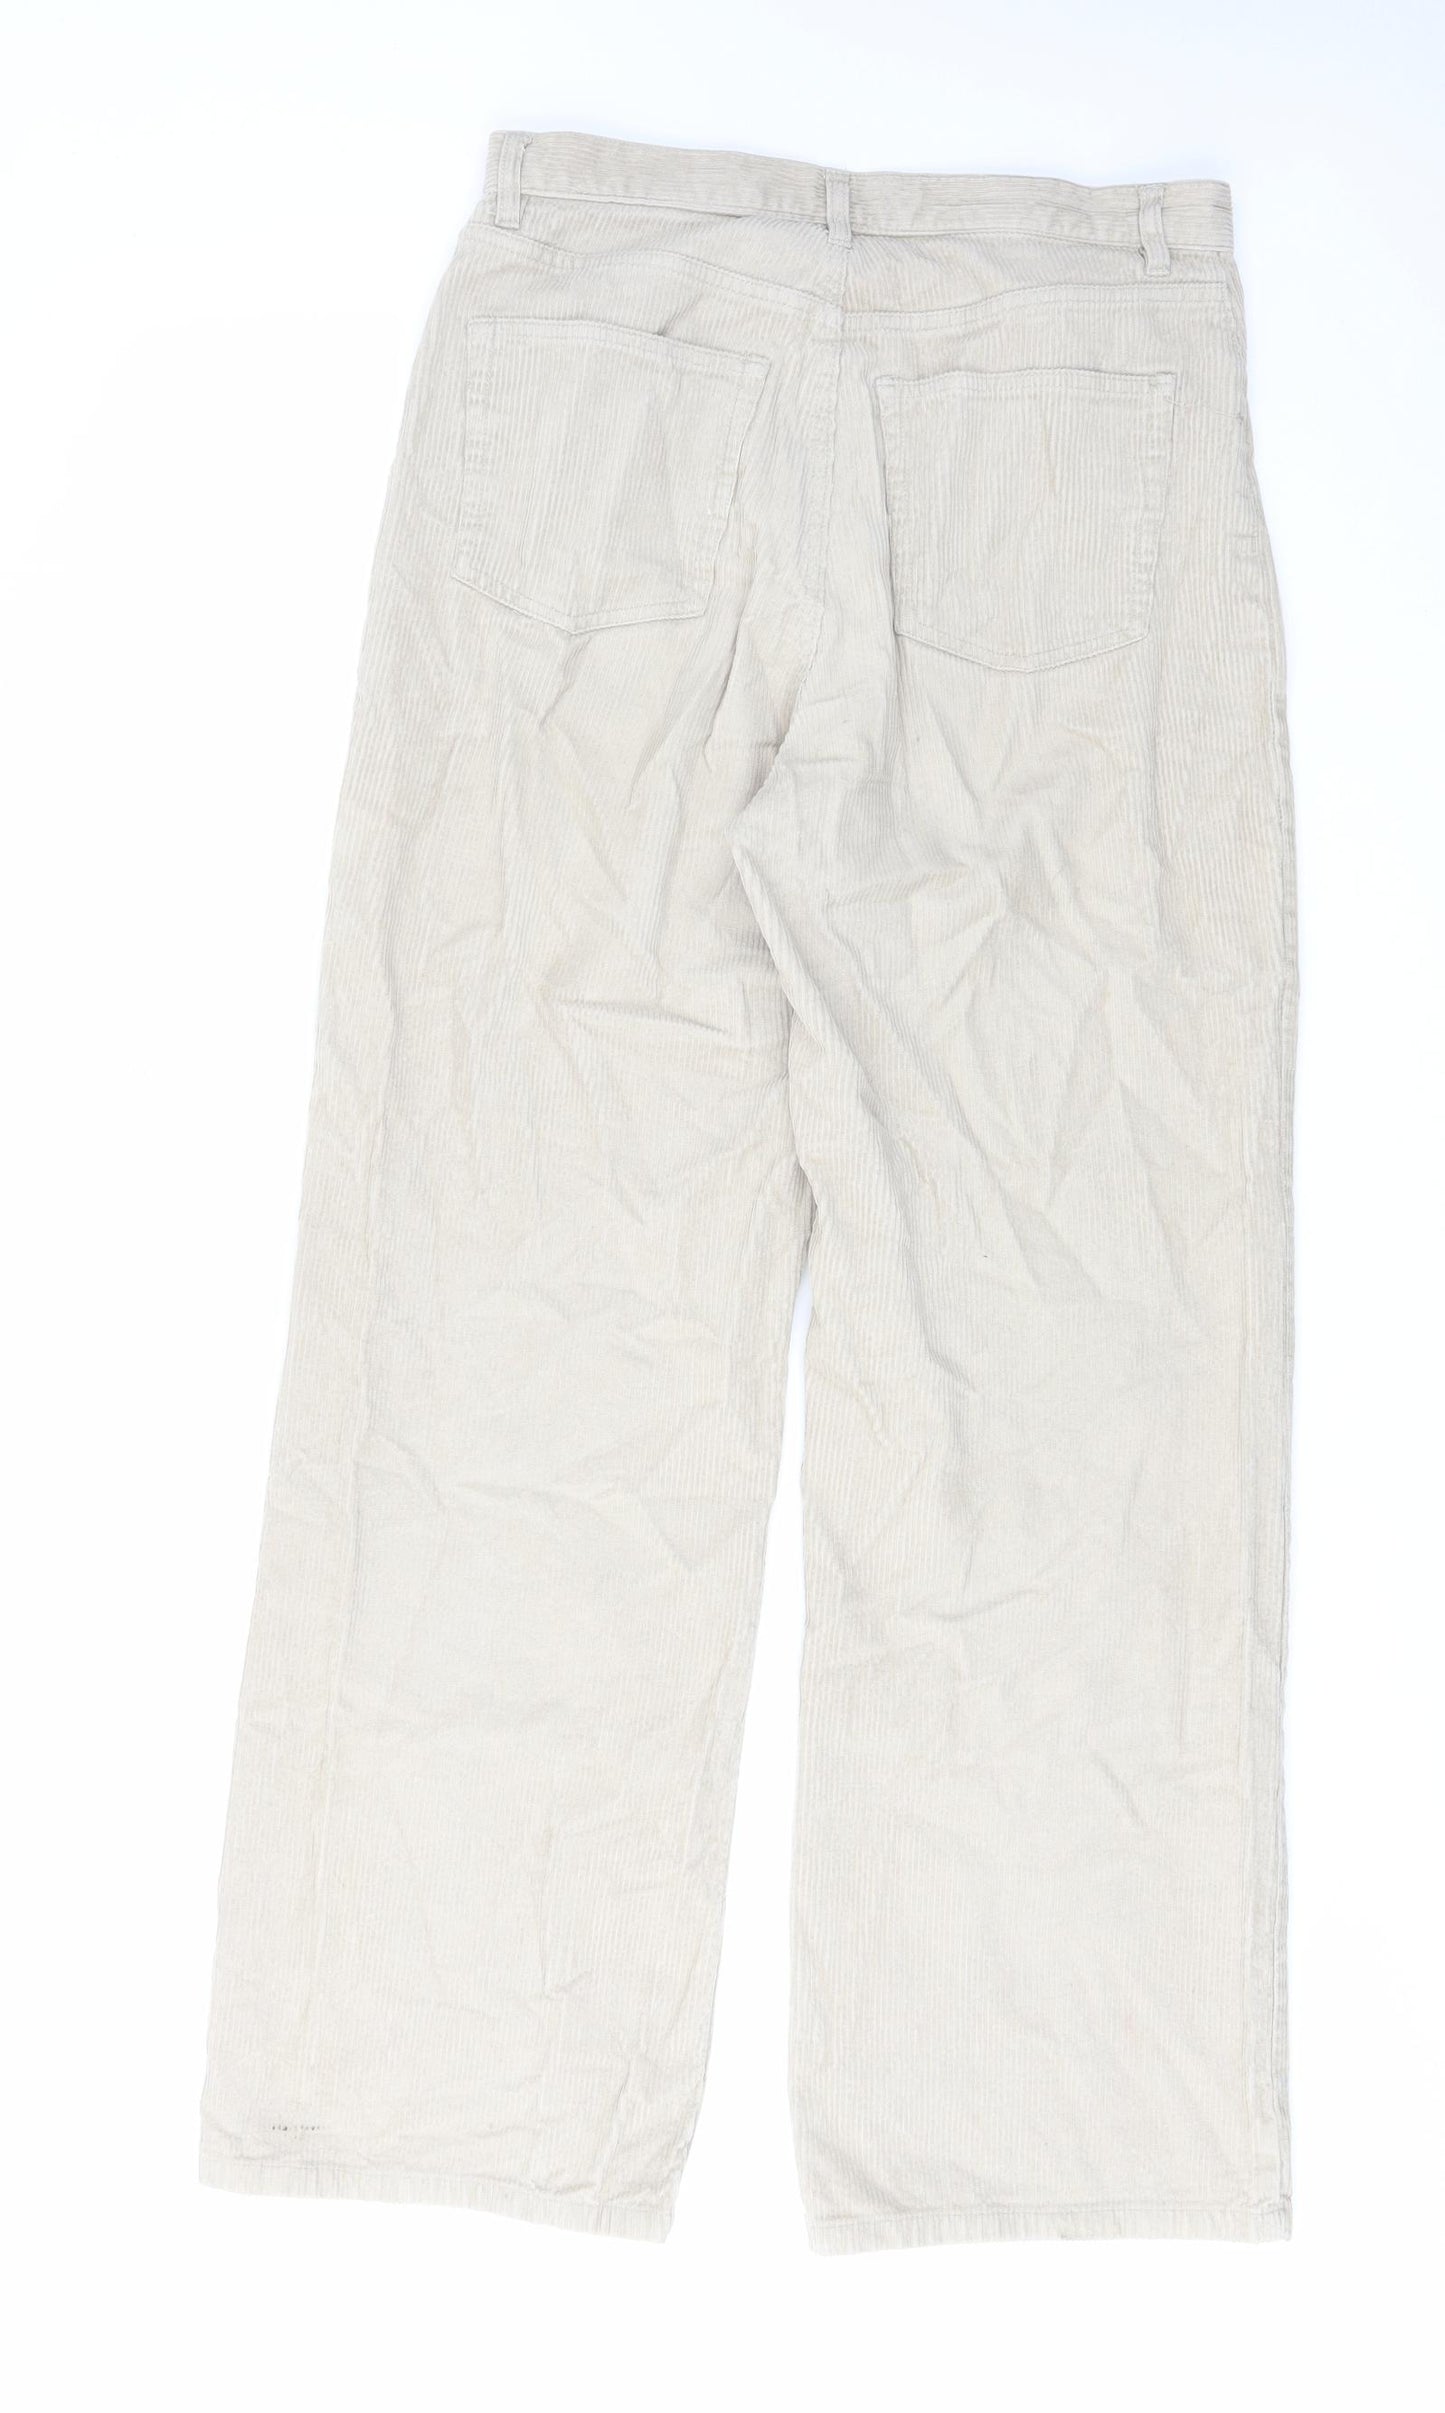 Monki Womens Beige Cotton Trousers Size 12 L30 in Regular Zip